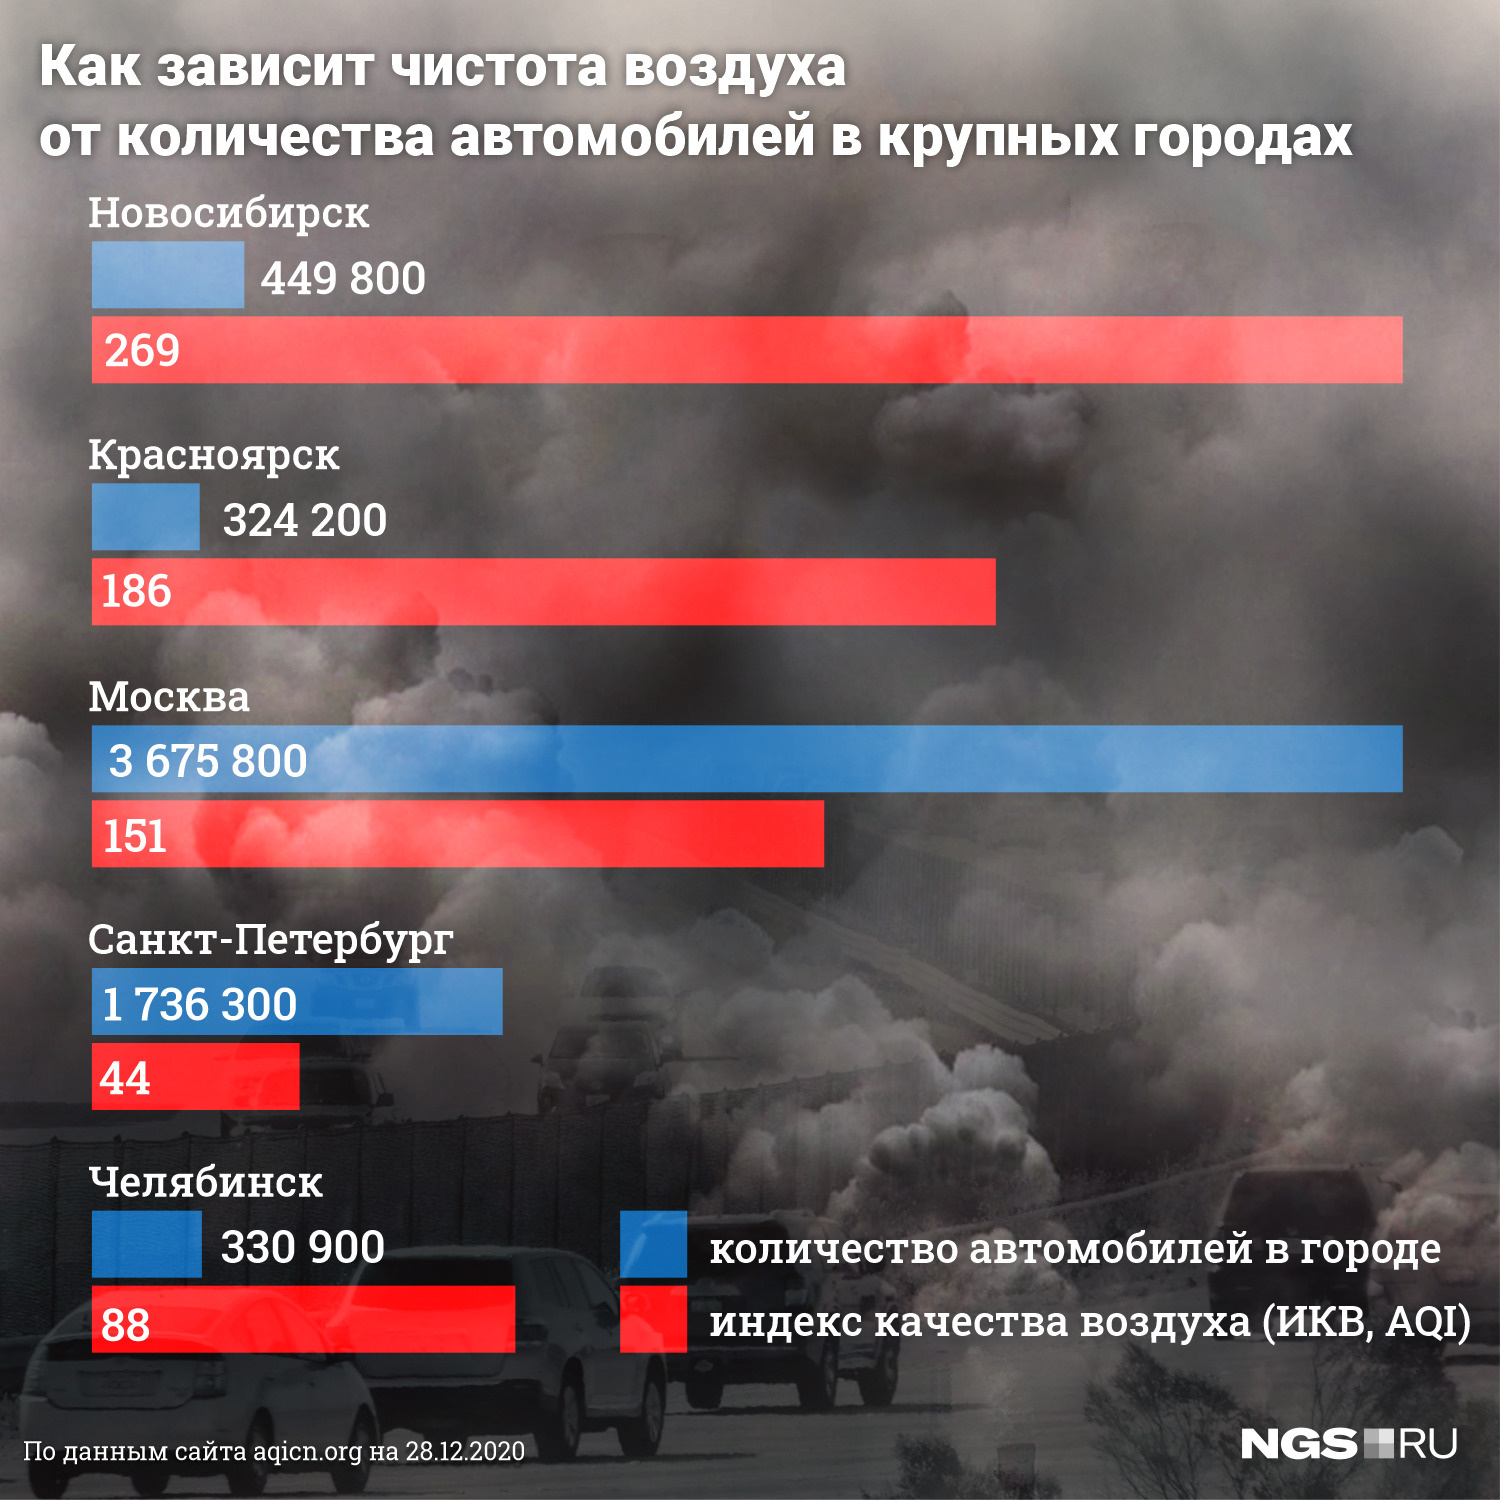 Несмотря на огромное число машин в Москве, столица может похвастать относительно невысокими показателями загрязненности воздуха. То ли дело в погодных условиях, то ли в культуре вождения